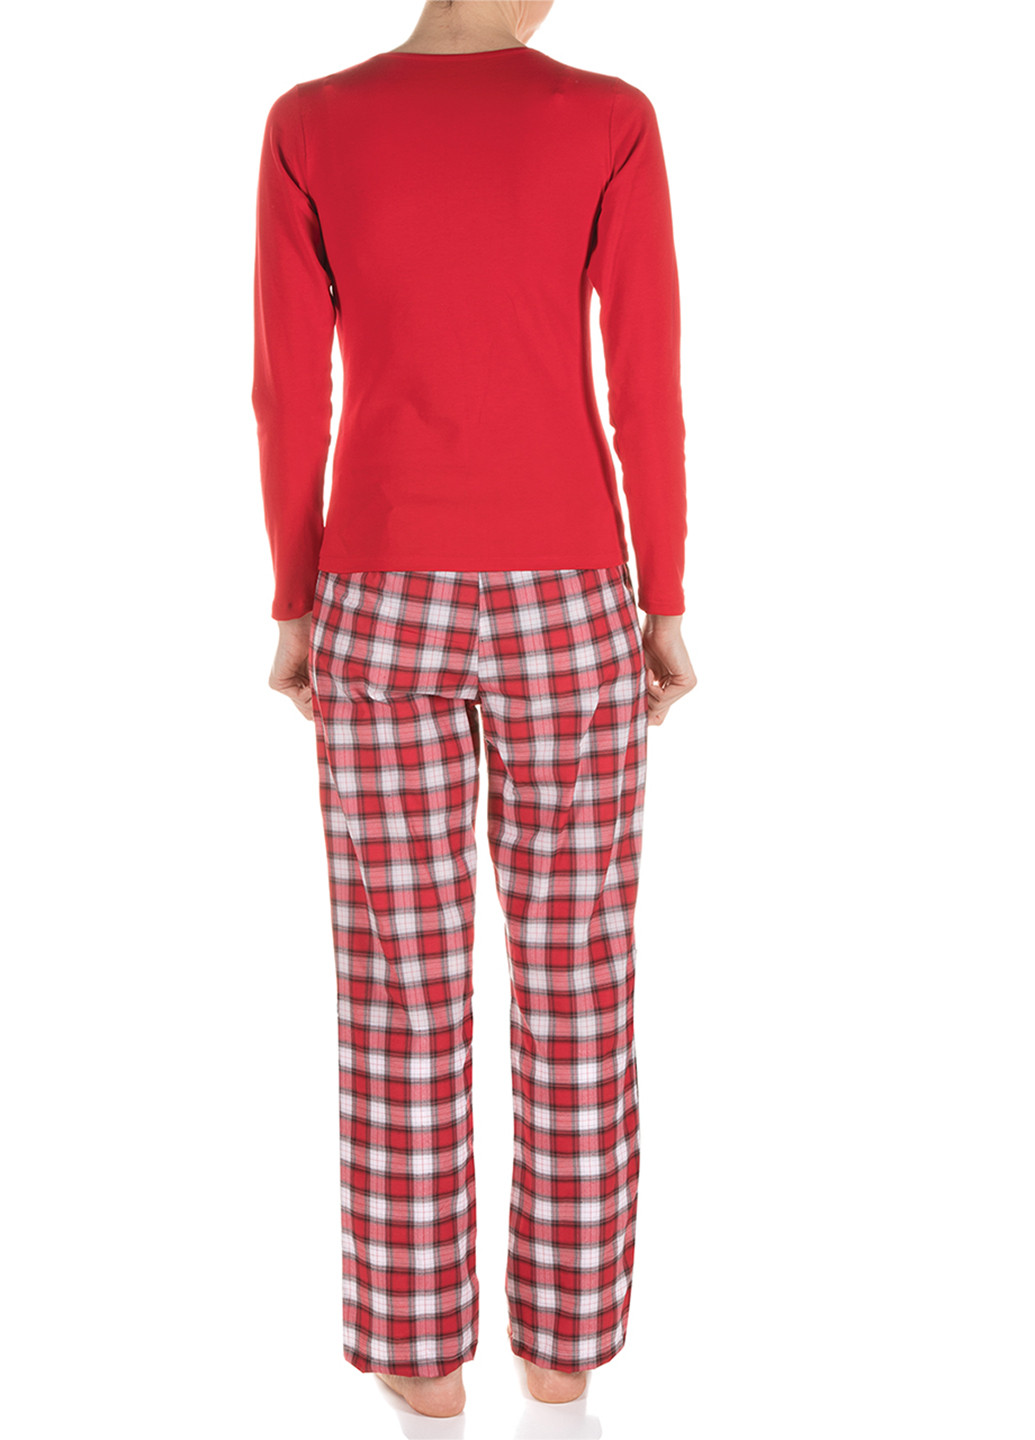 Красная всесезон пижама (лонгслив, брюки) лонгслив + брюки DoReMi